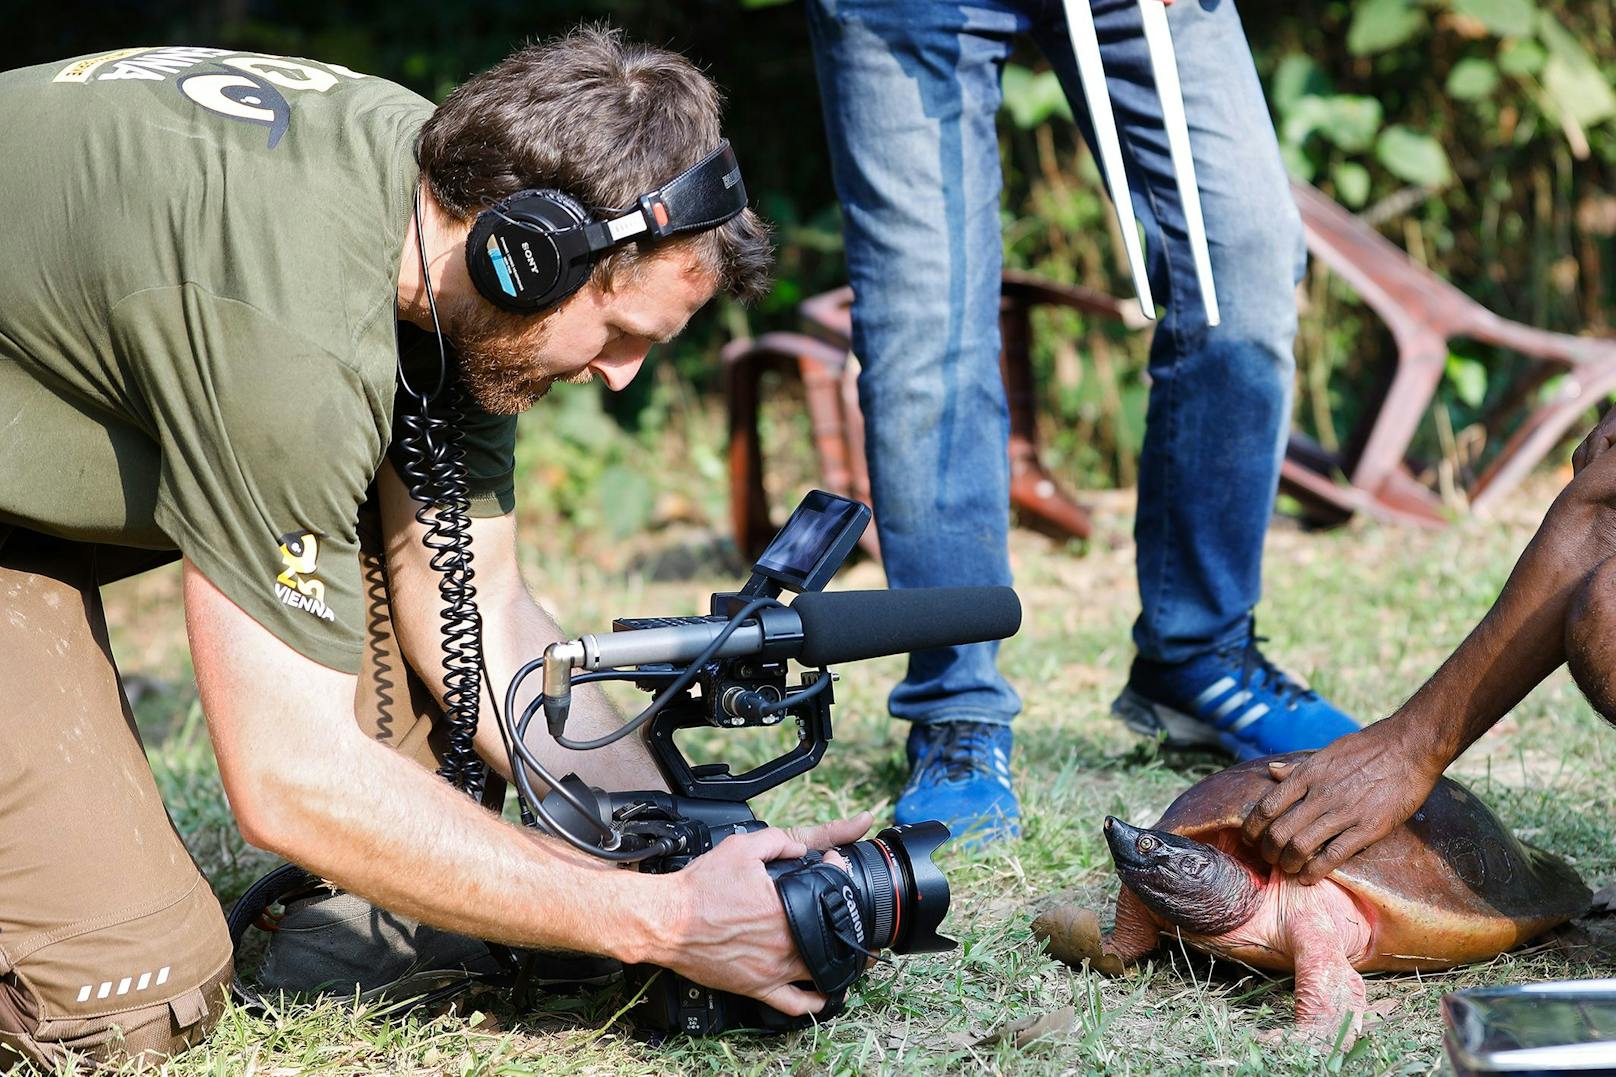 Tiergartenfilmer Jonas Kühnapfel mit einem Bagatur-Schildkröten Männchen kurz vor der Auswilderung.